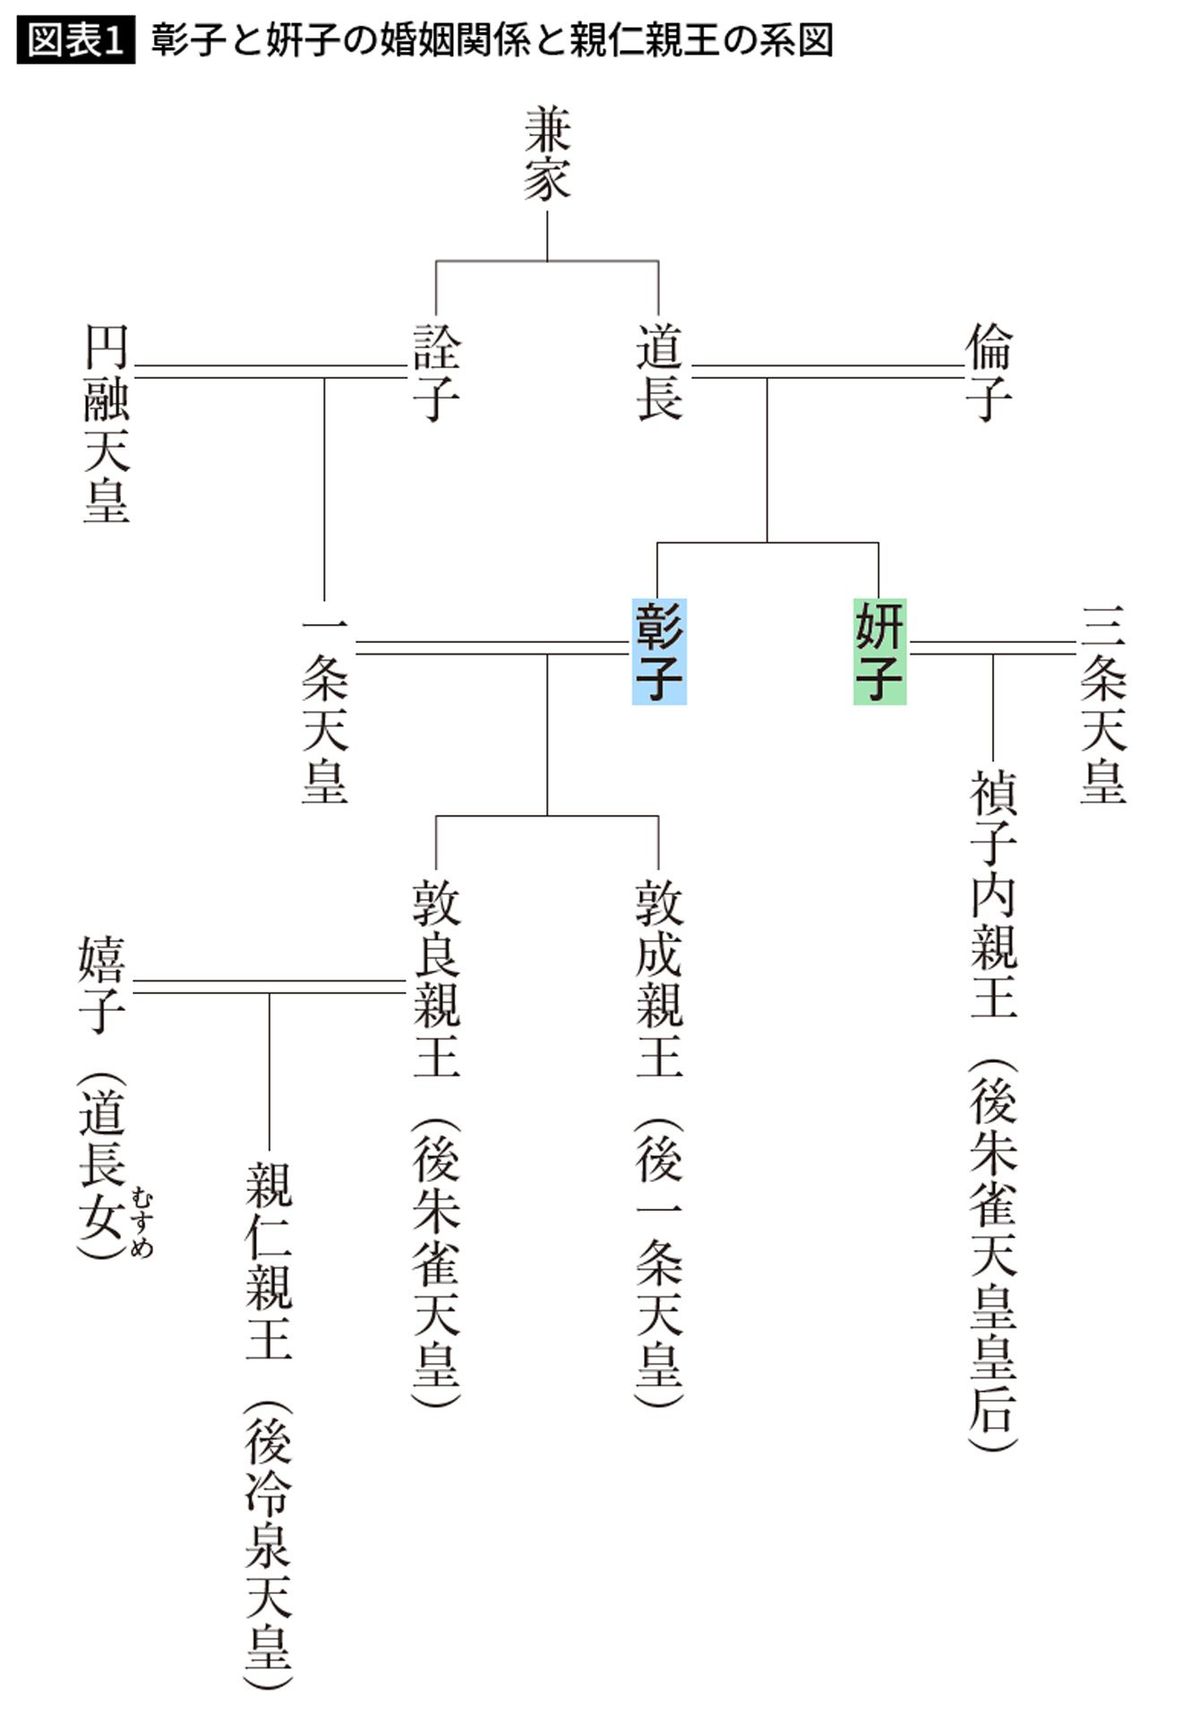 【図表】彰子と姸子の婚姻関係と親仁親王の系図